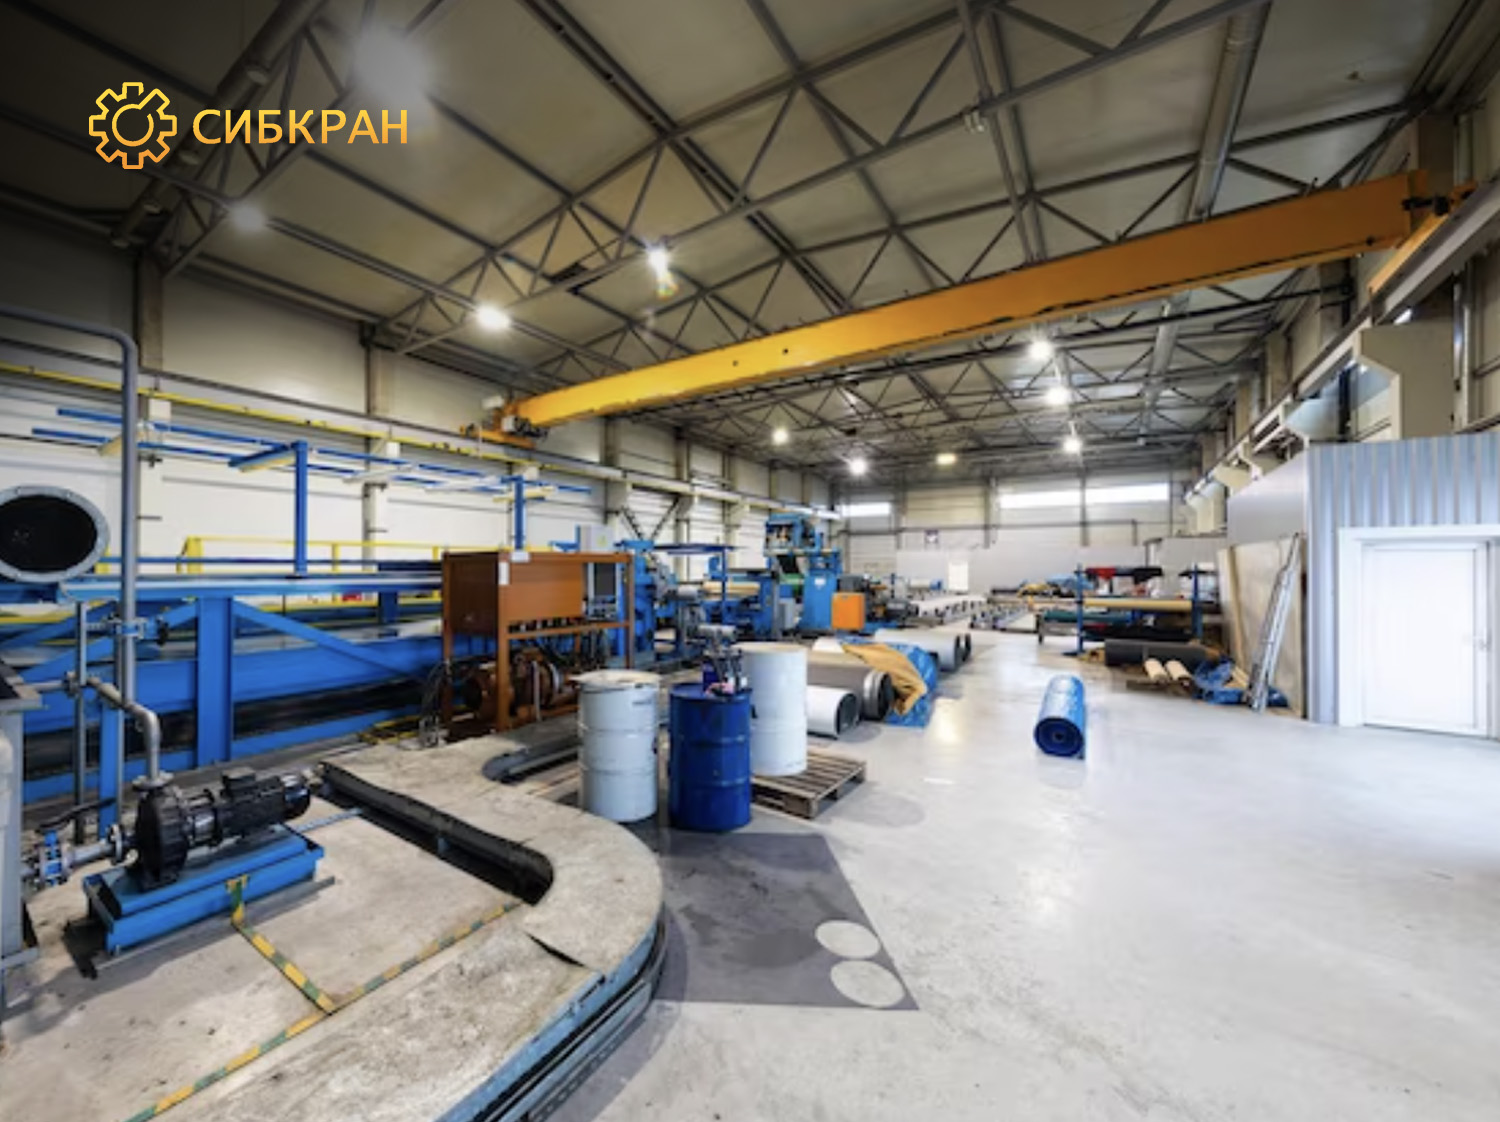 Изготовление, поставка и монтаж крана мостового электрического однобалочного опорного г/п 5 тонн, пролет 10,5 метров в г. Томск